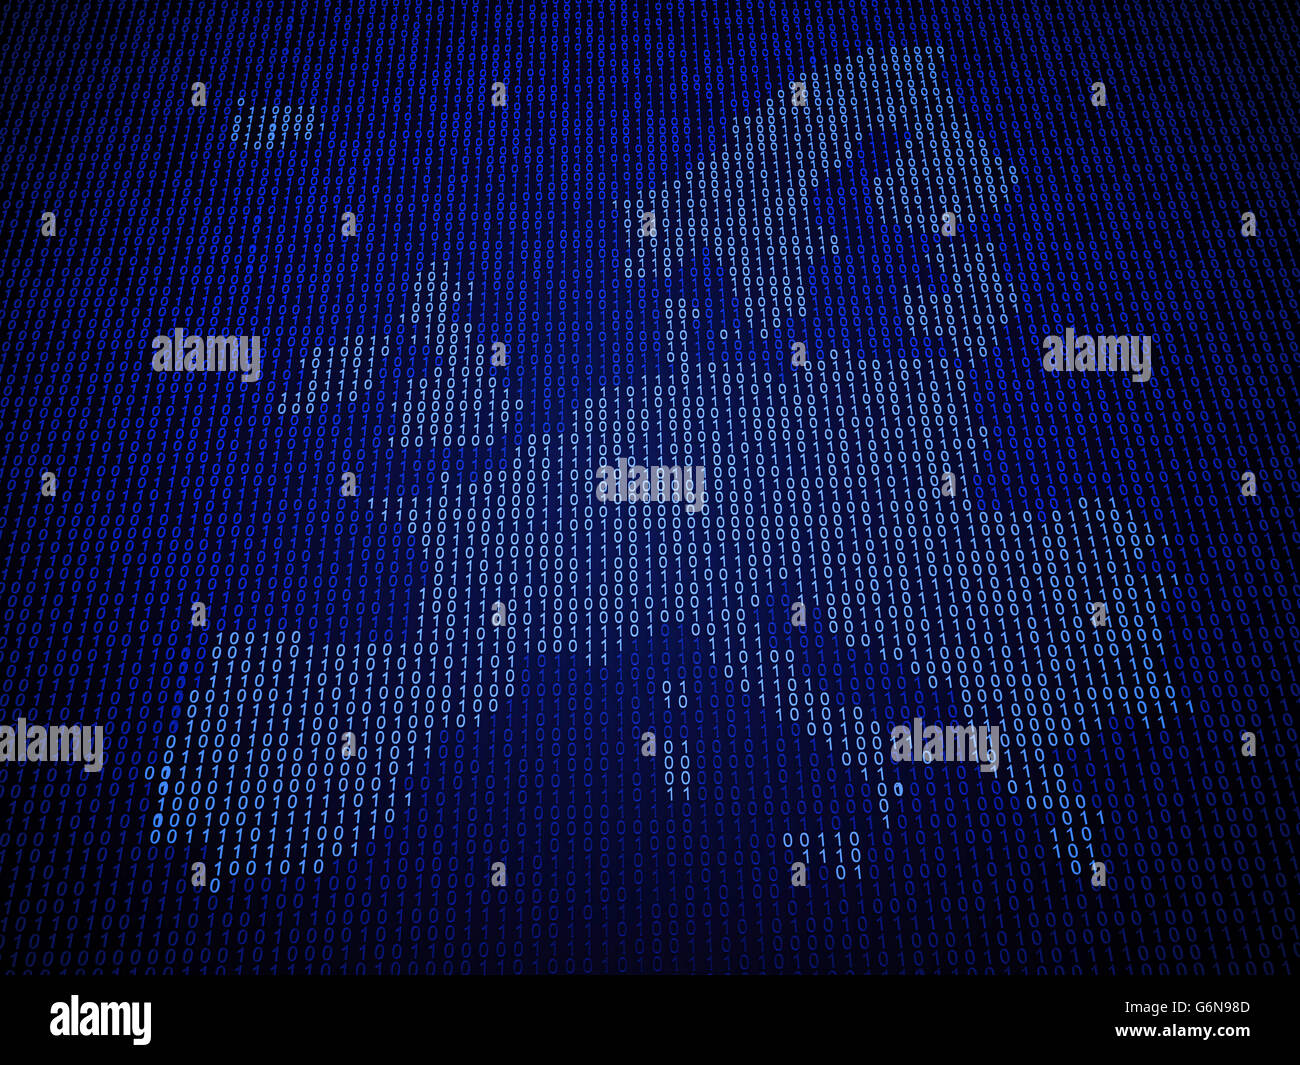 Carte de l'Union européenne faite de code binaire Banque D'Images